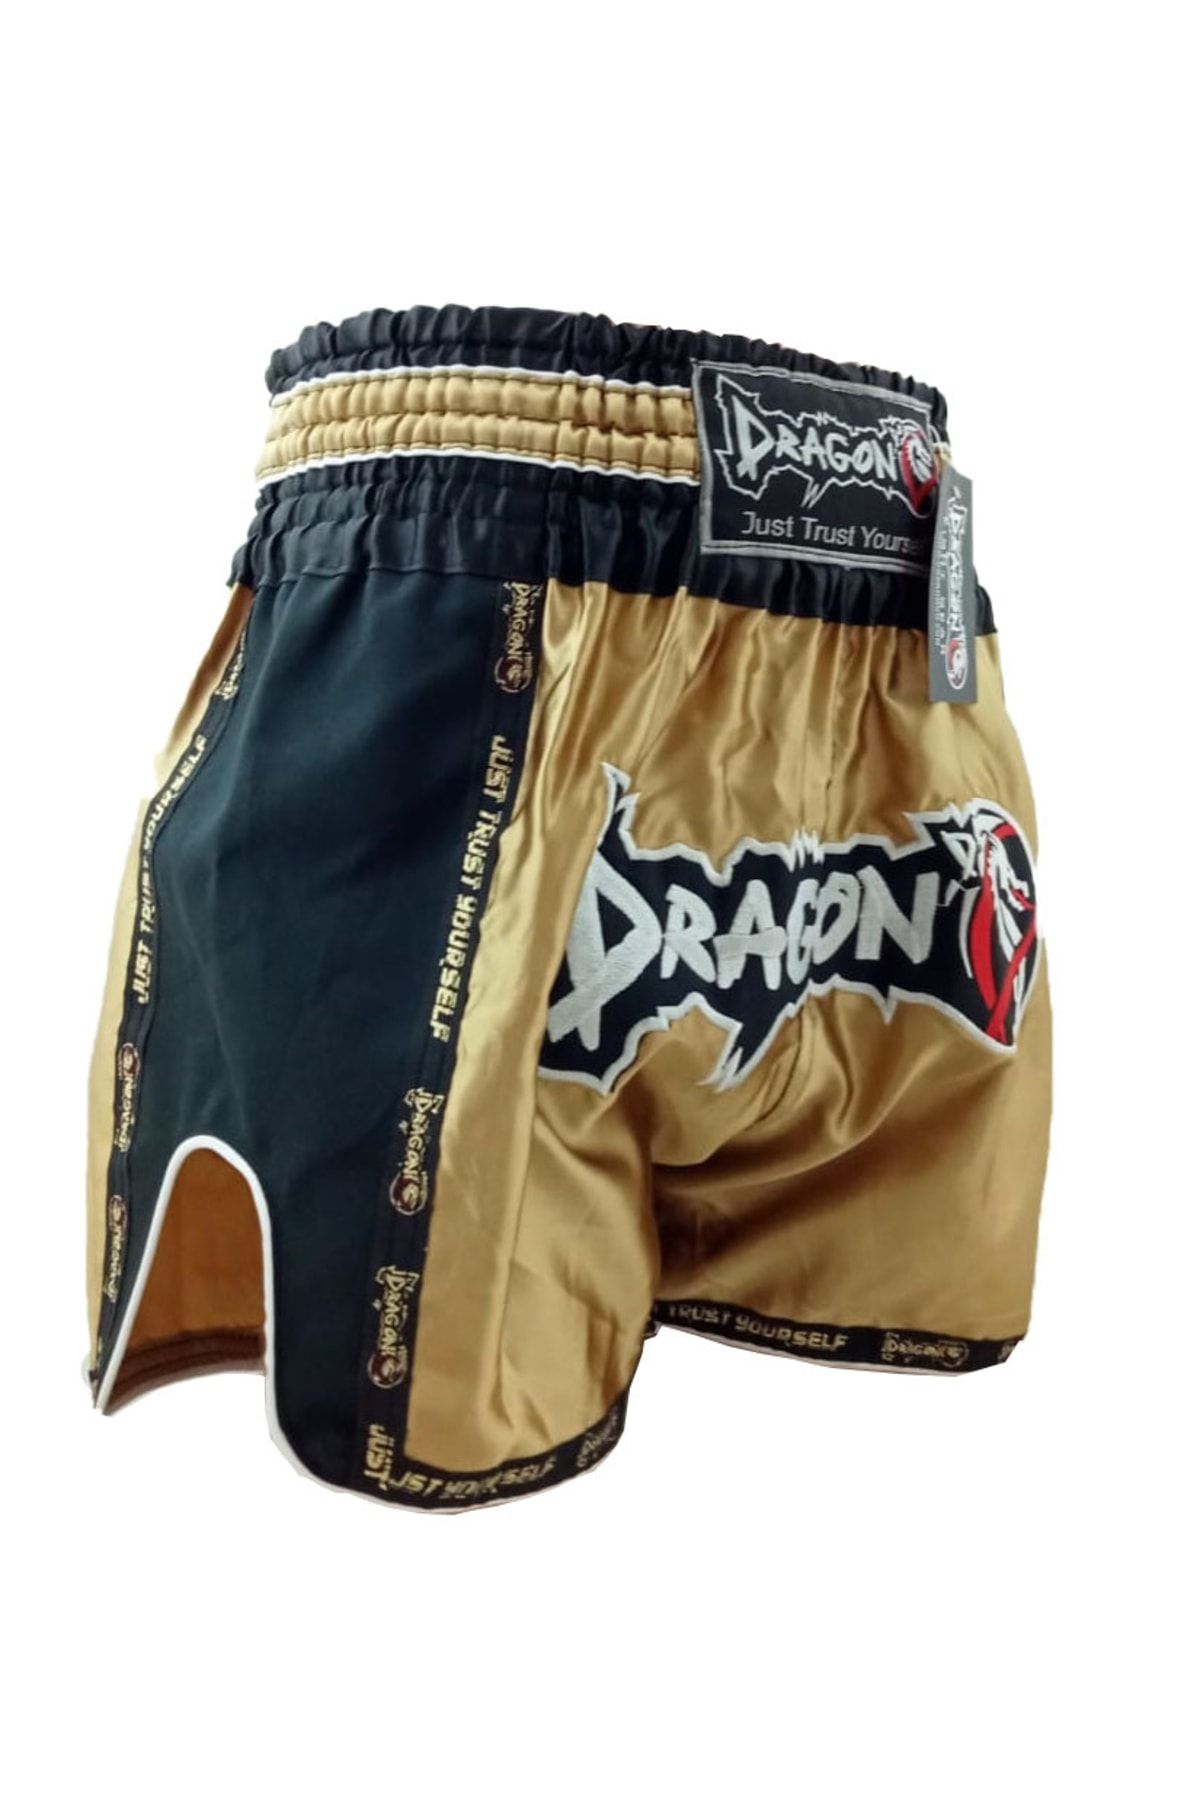 Dragondo Retro Muay Thai Şortu Mt 3075